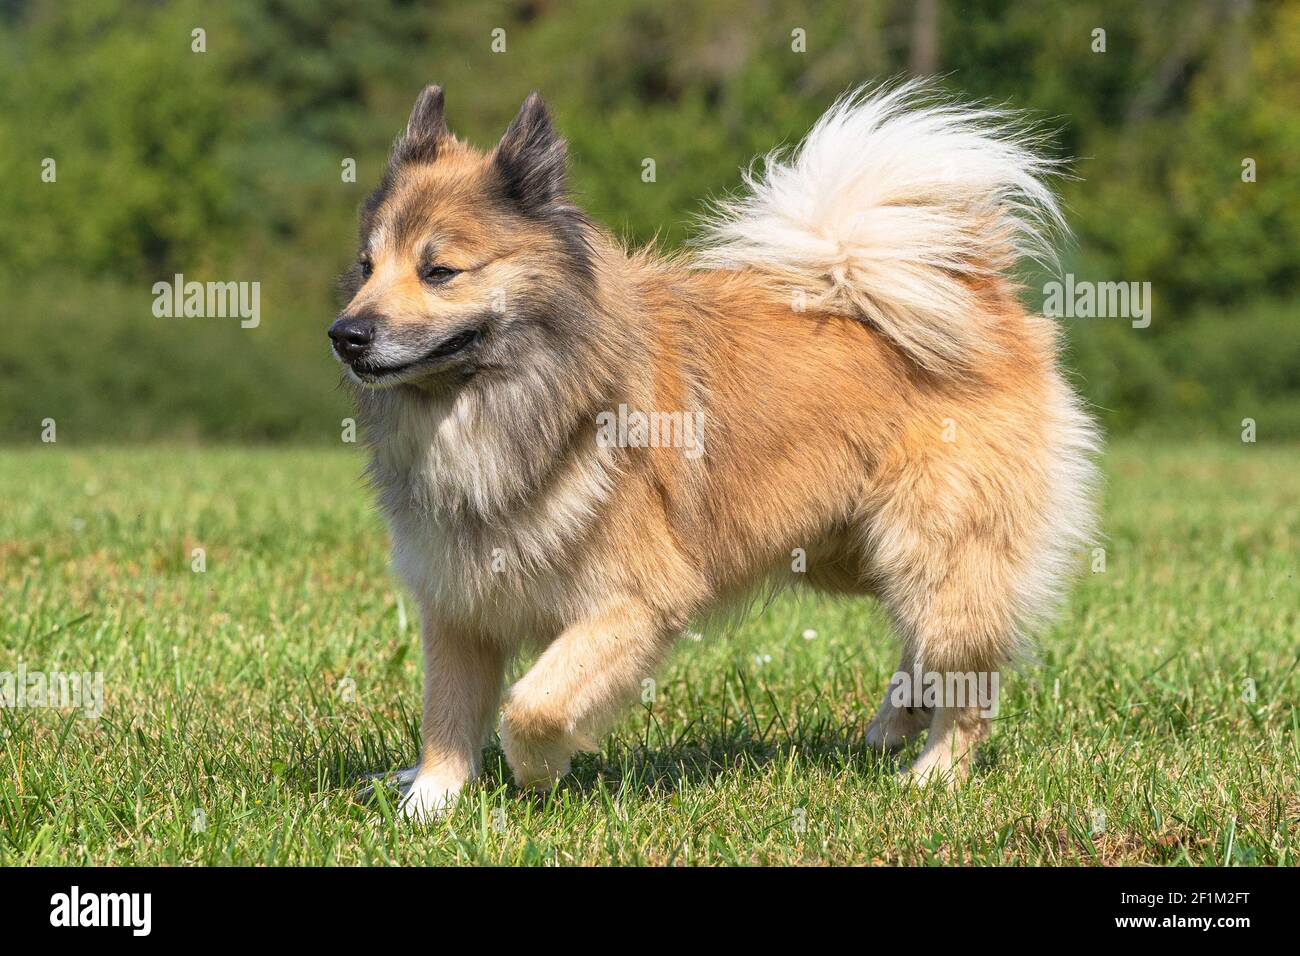 Isländischer Hund, FCI anerkannt Hunderasse aus Island Stockfotografie -  Alamy